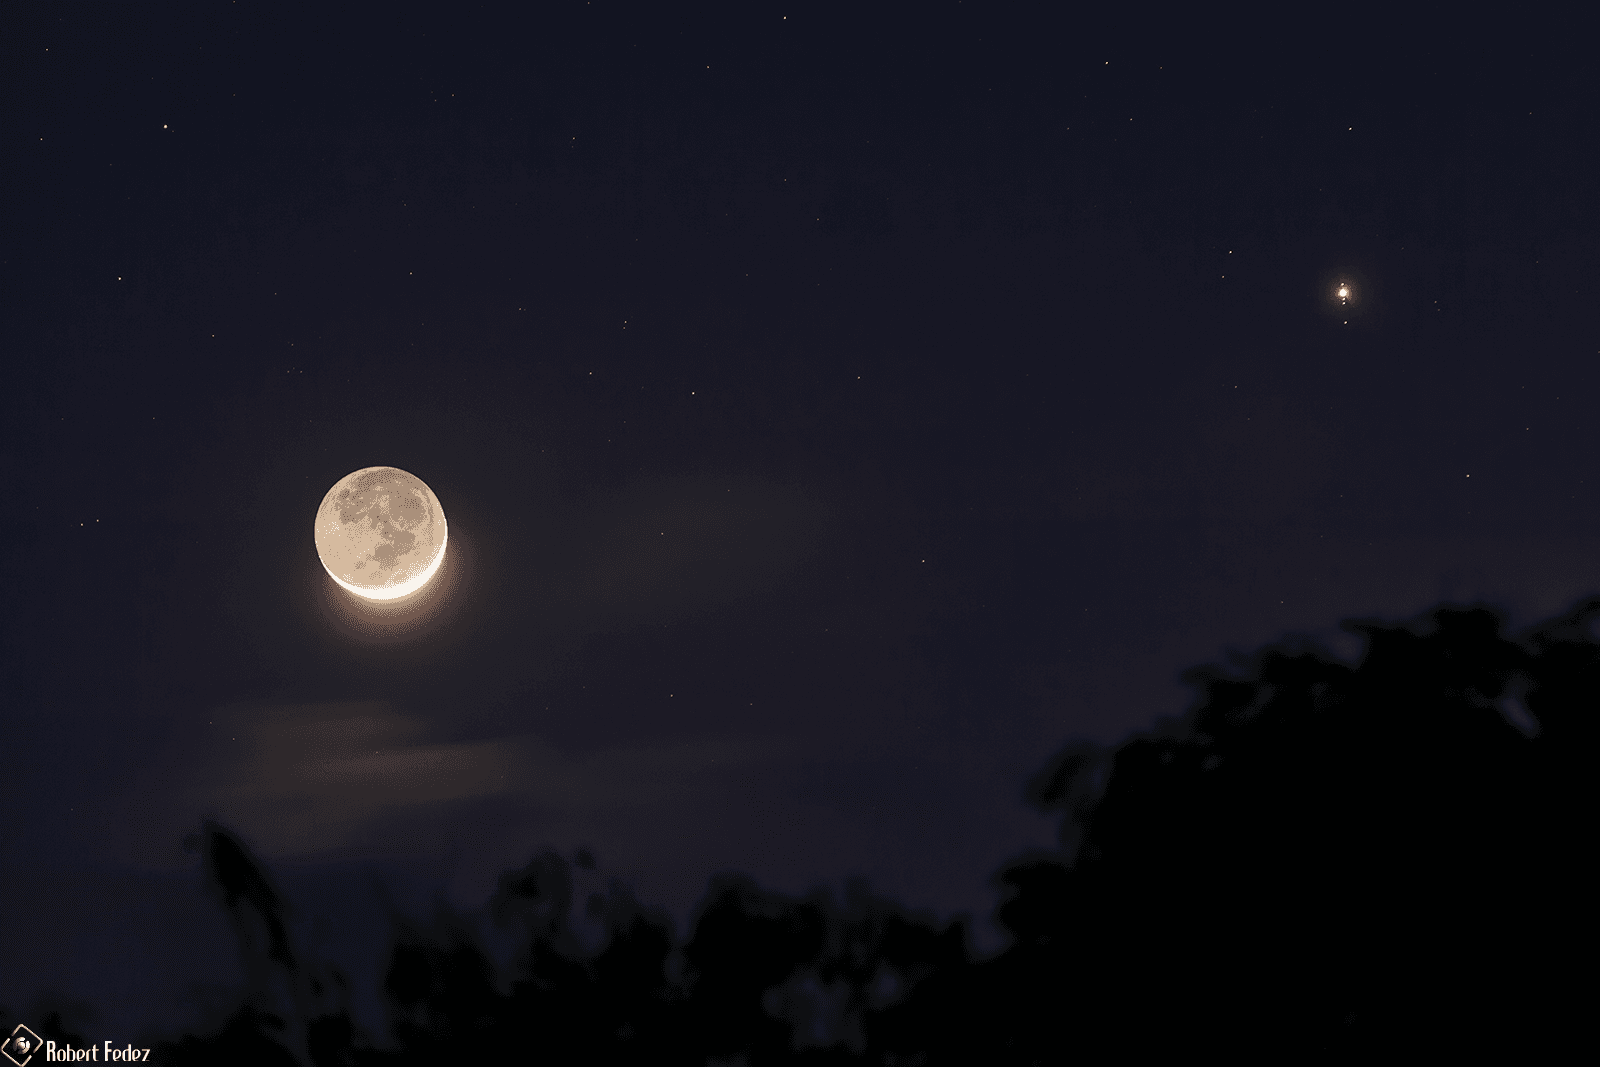 قمرٌ بطور الهلال حيث يظهر أسفلهُ مناراً بضوء الشمس والباقي بألق الأرض، بينما يظهر المشتري على اليمين صغيراً ساطعاً وتطصفّ معه أقماره الگاليليّة واحدٌ فوقه والثلاثة الباقية تحته